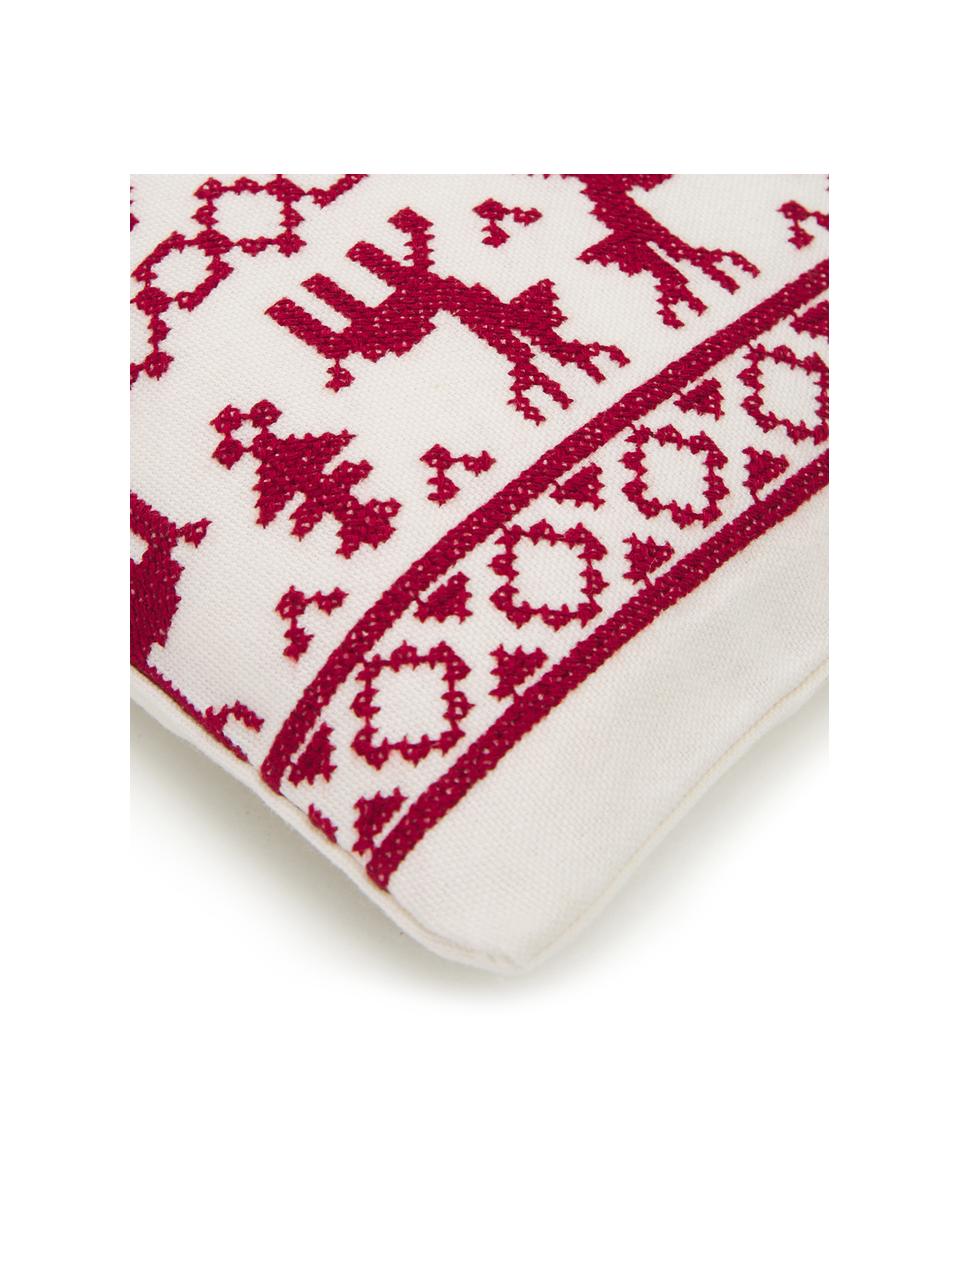 Poszewka na poduszkę Orkney, 100% bawełna, Czerwony, kremowobiały, S 45 x D 45 cm